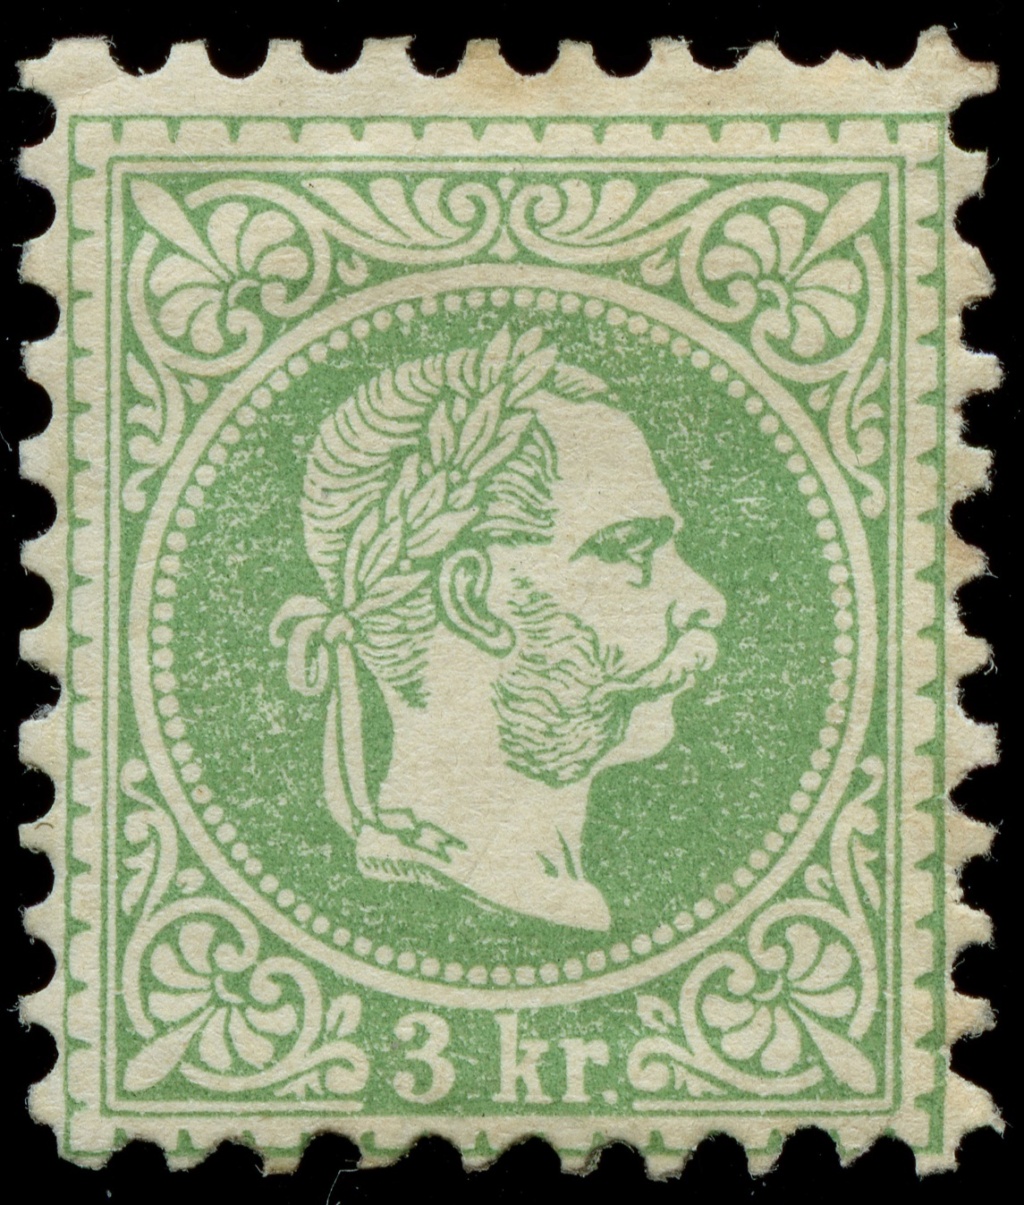 Nachtrag - Freimarken-Ausgabe 1867 : Kopfbildnis Kaiser Franz Joseph I - Seite 23 Ank_3625